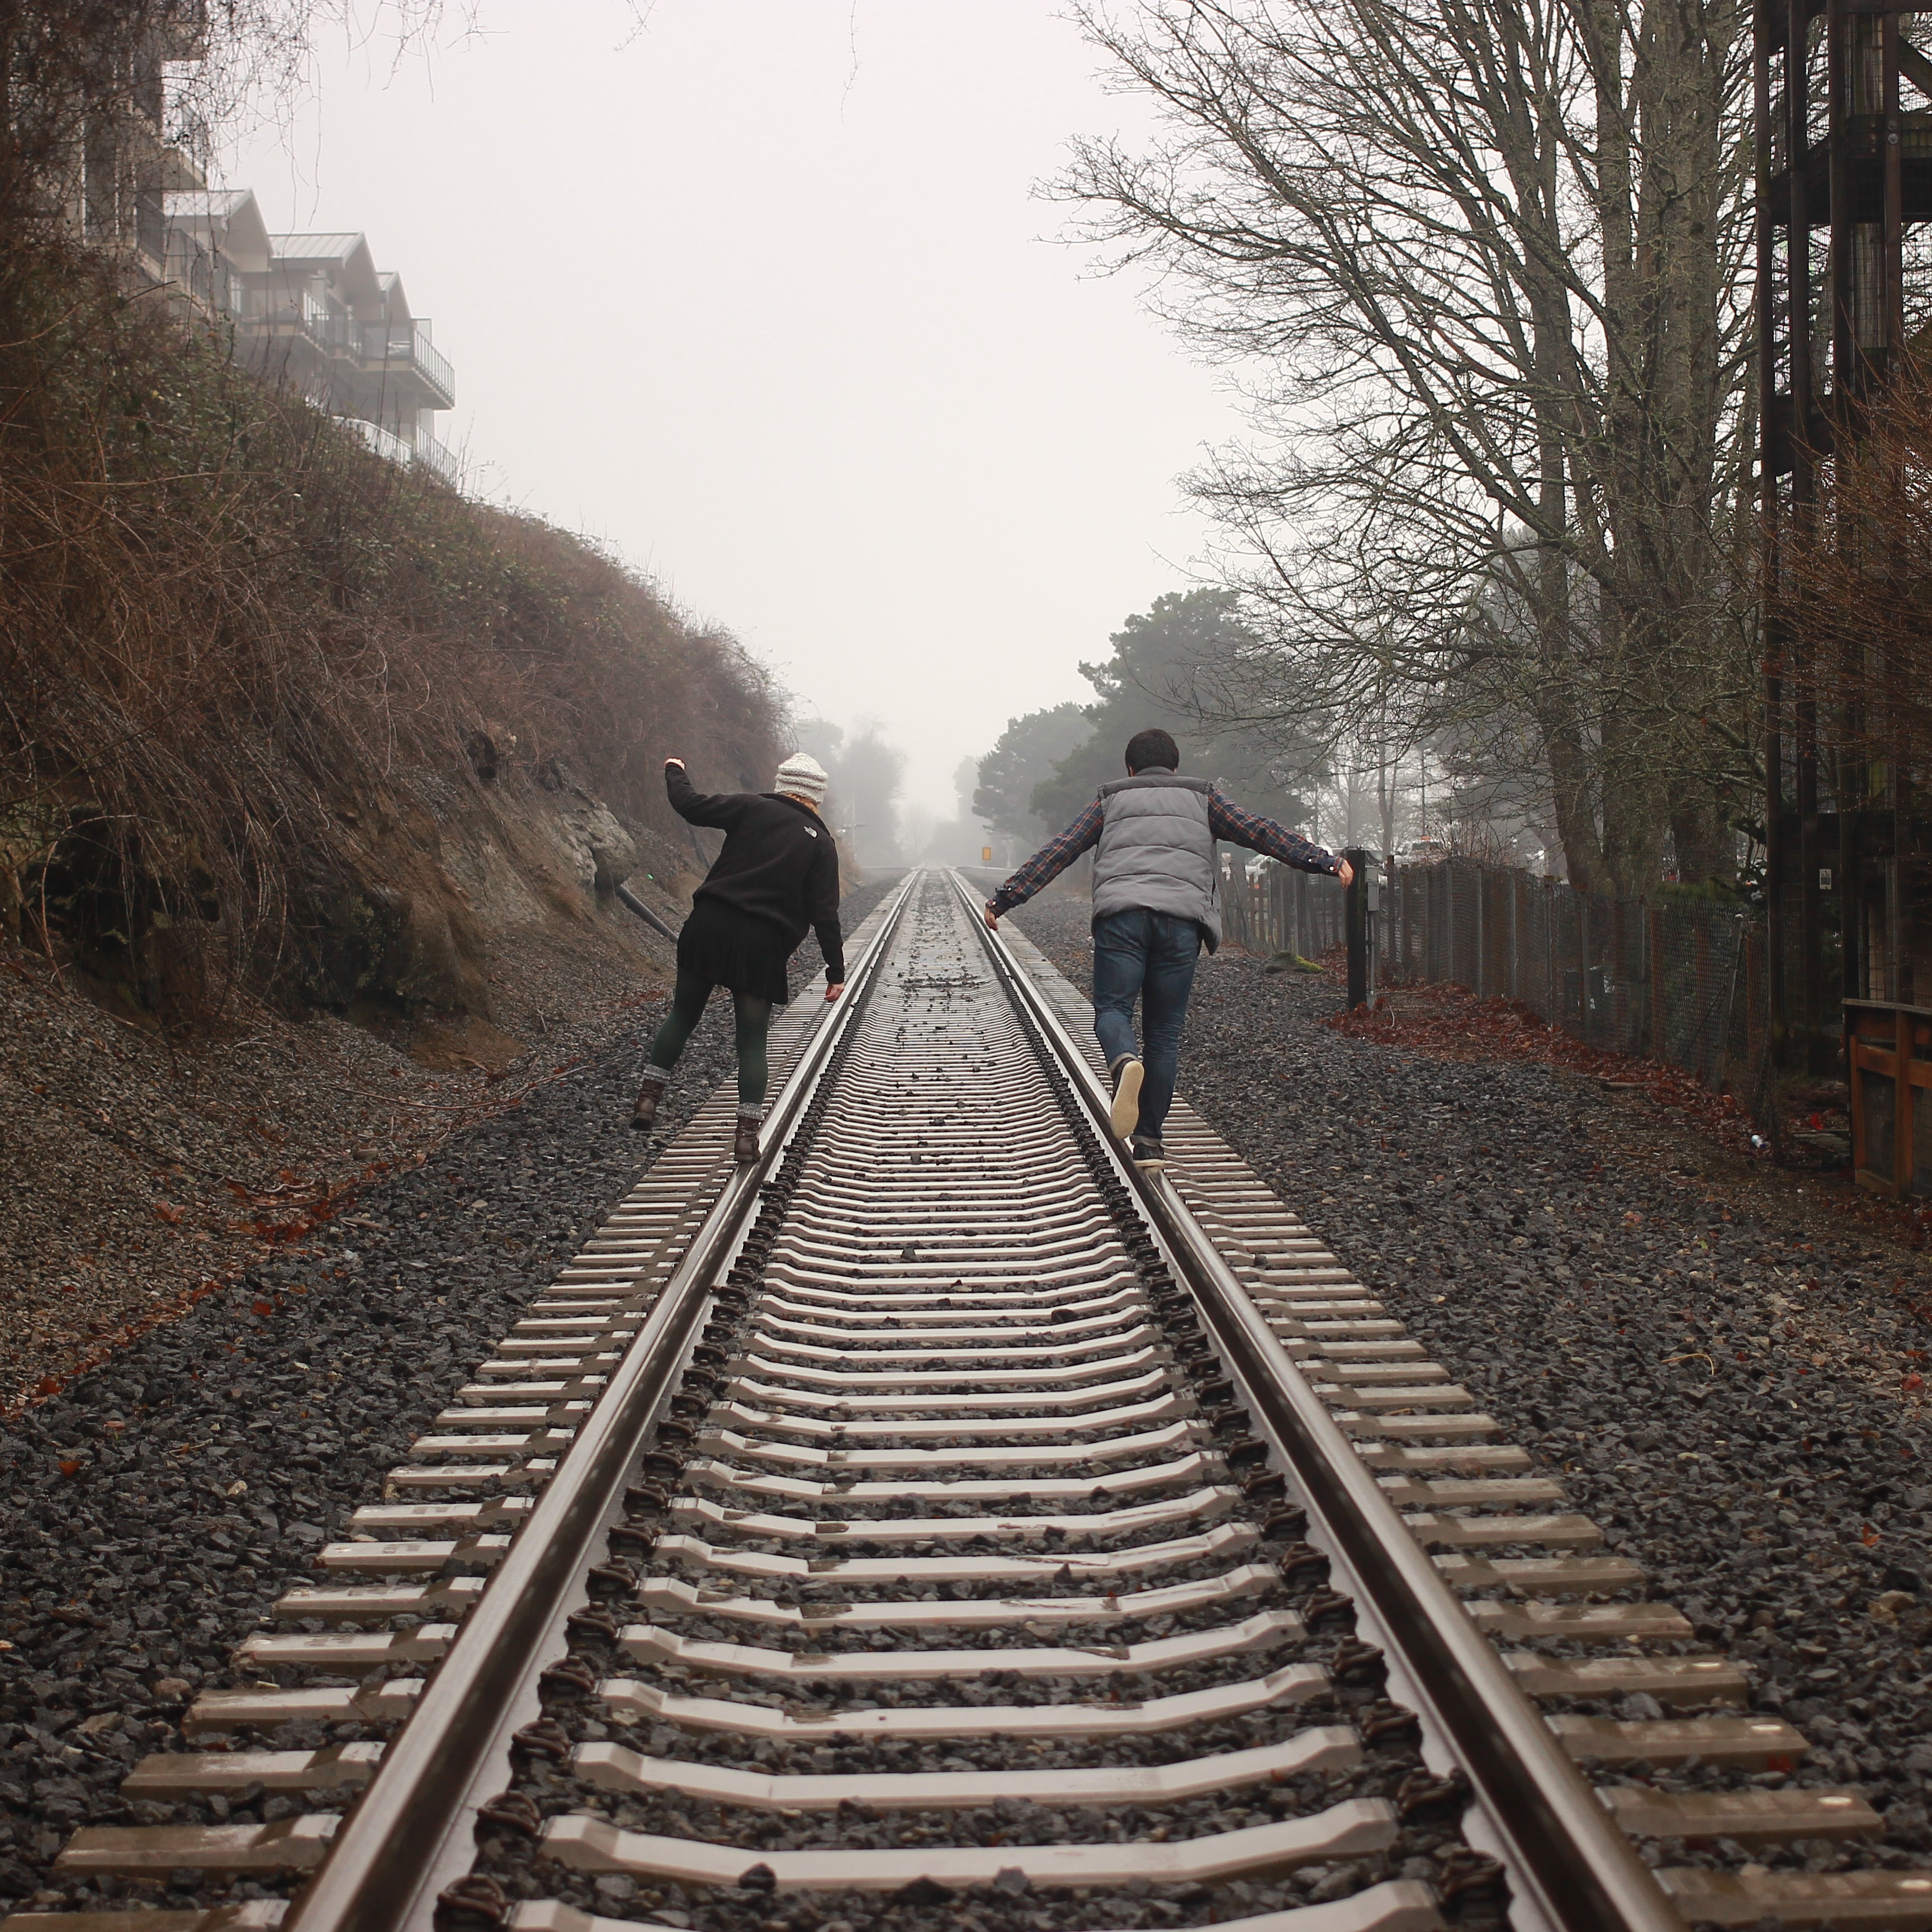 “A Walk On The Train Tracks”